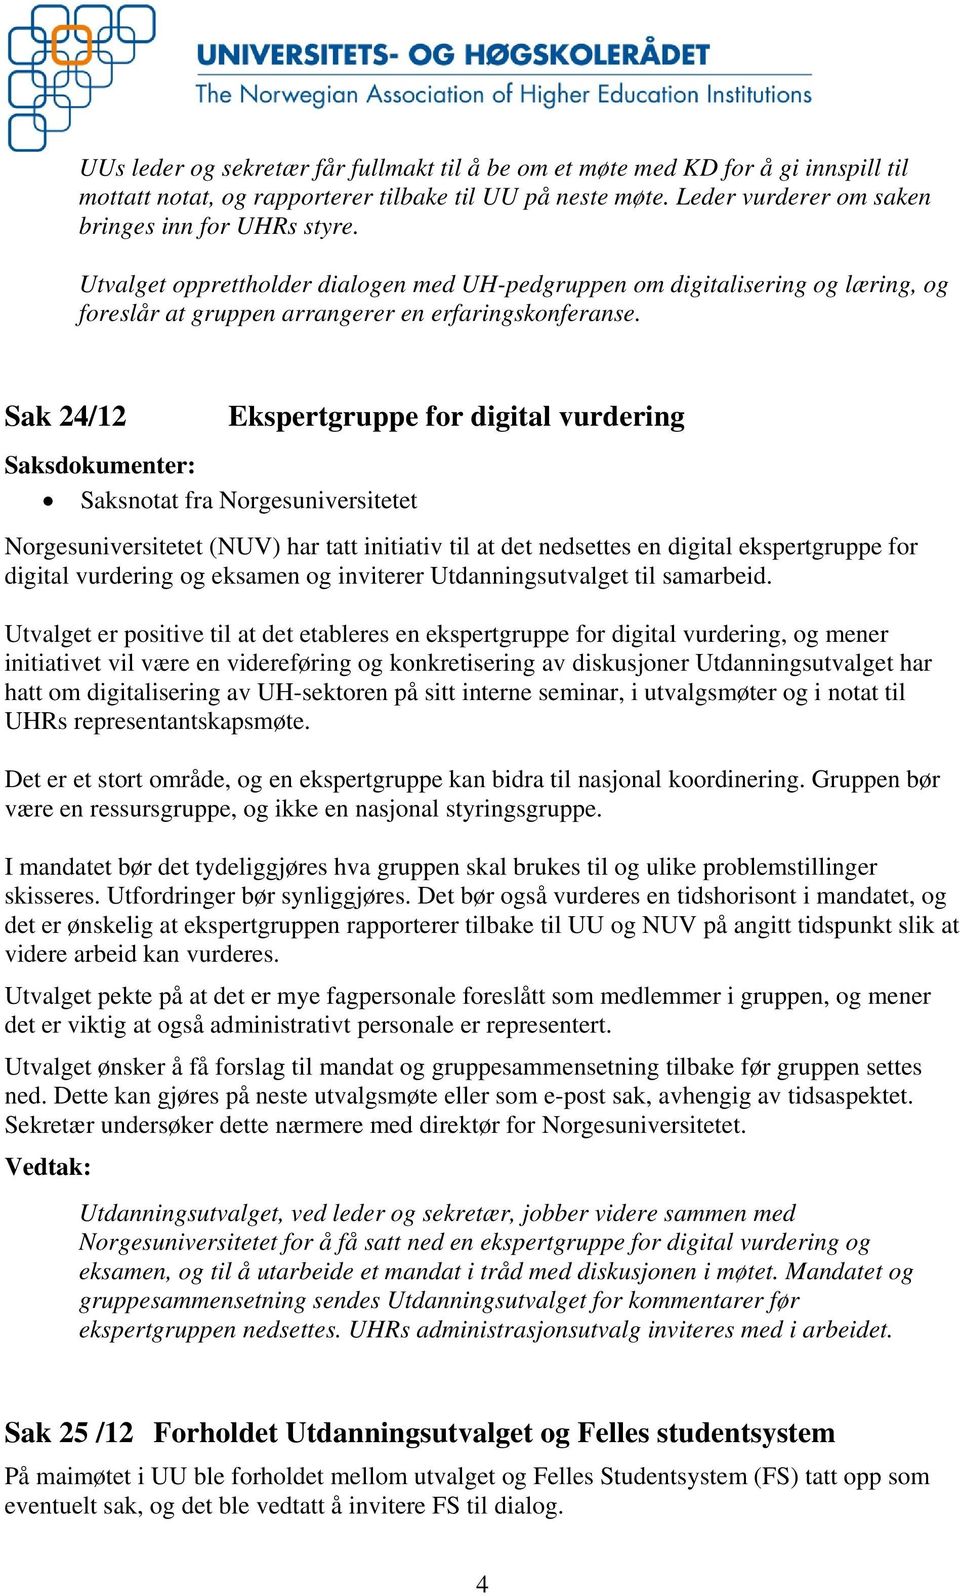 Sak 24/12 Saksdokumenter: Saksnotat fra Norgesuniversitetet Ekspertgruppe for digital vurdering Norgesuniversitetet (NUV) har tatt initiativ til at det nedsettes en digital ekspertgruppe for digital